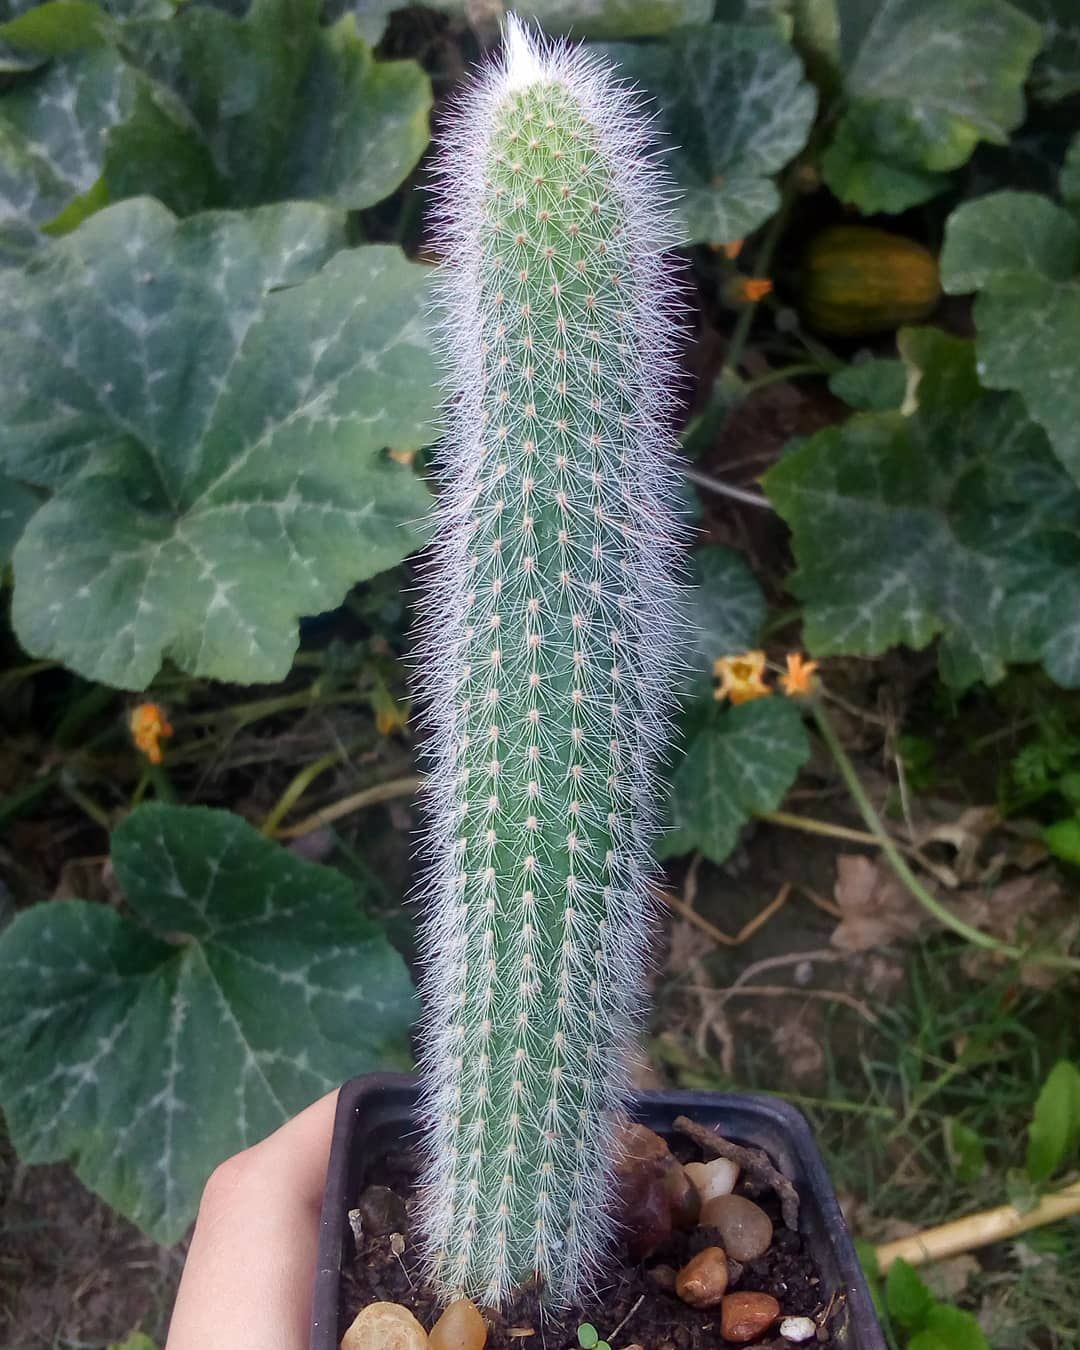 Imagen de cactus parecido al mío.